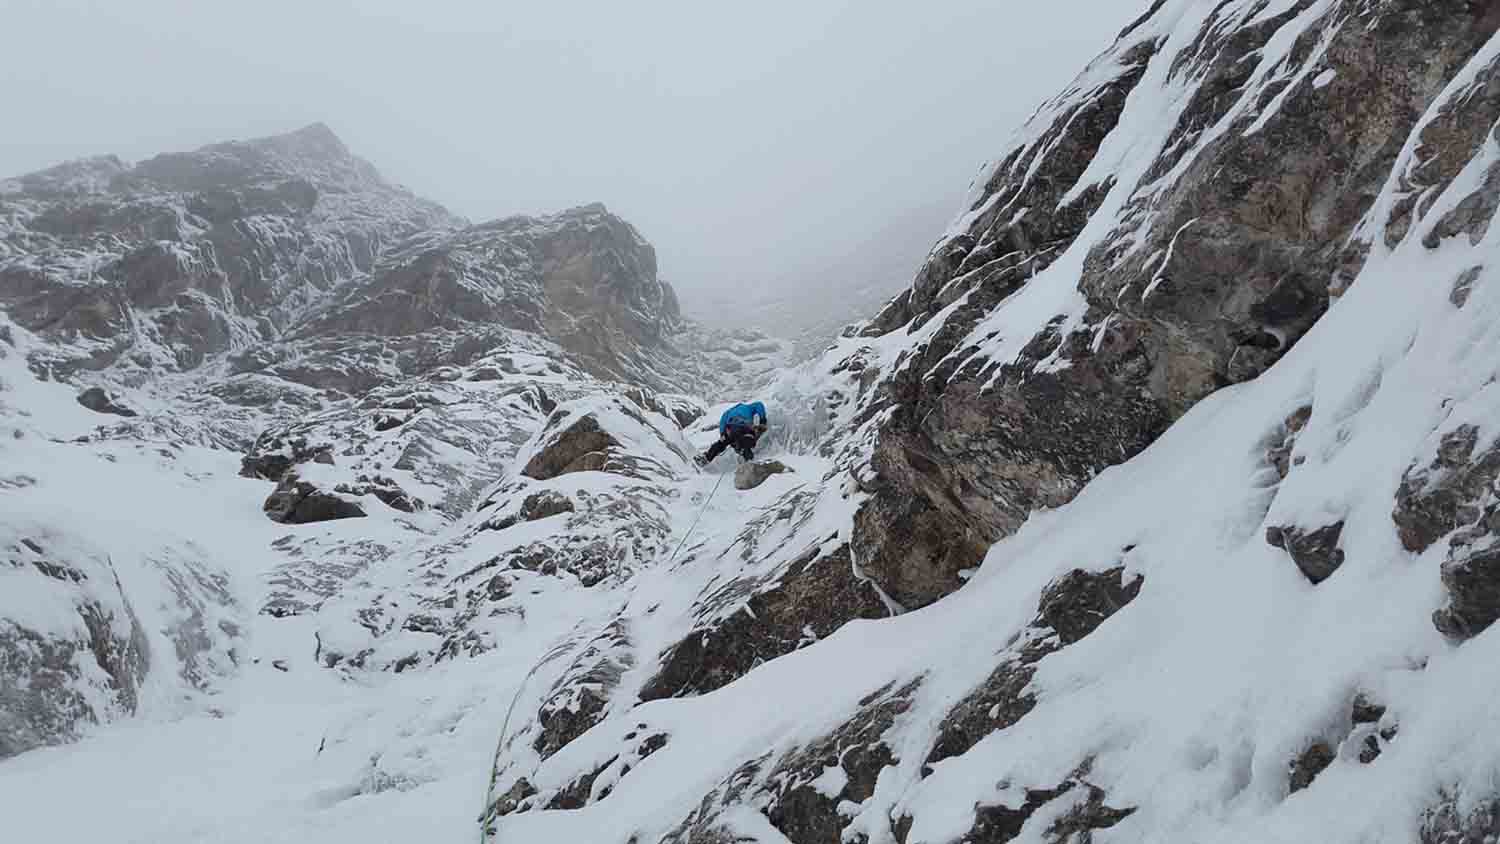 O alpinismo é um esporte de progressão praticado em alturas acima de 2,5 mil metros que exige muita técnica e experiência